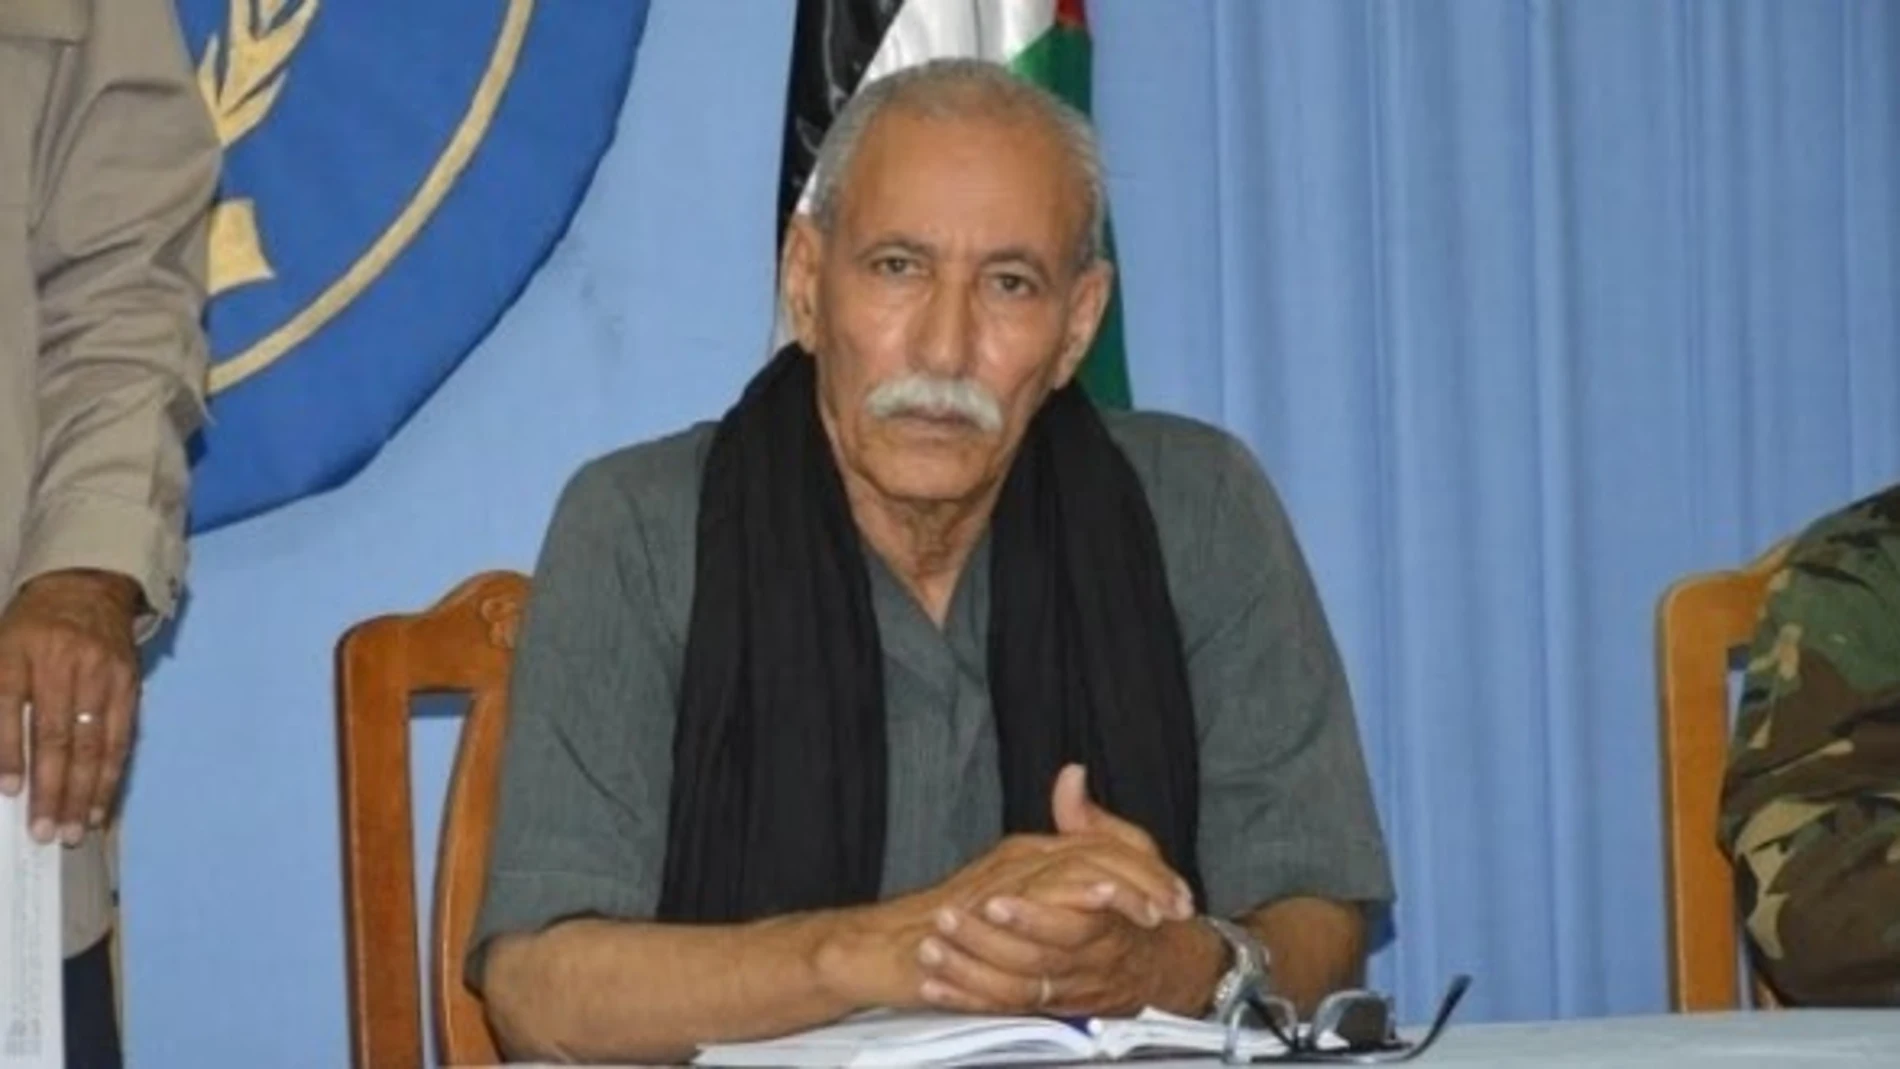 El líder del Frente Polisario, Brahim Ghali, estuvo ingresado en un hospital de Logroño del 18 de abril al 1 de junio de 202109/07/2016